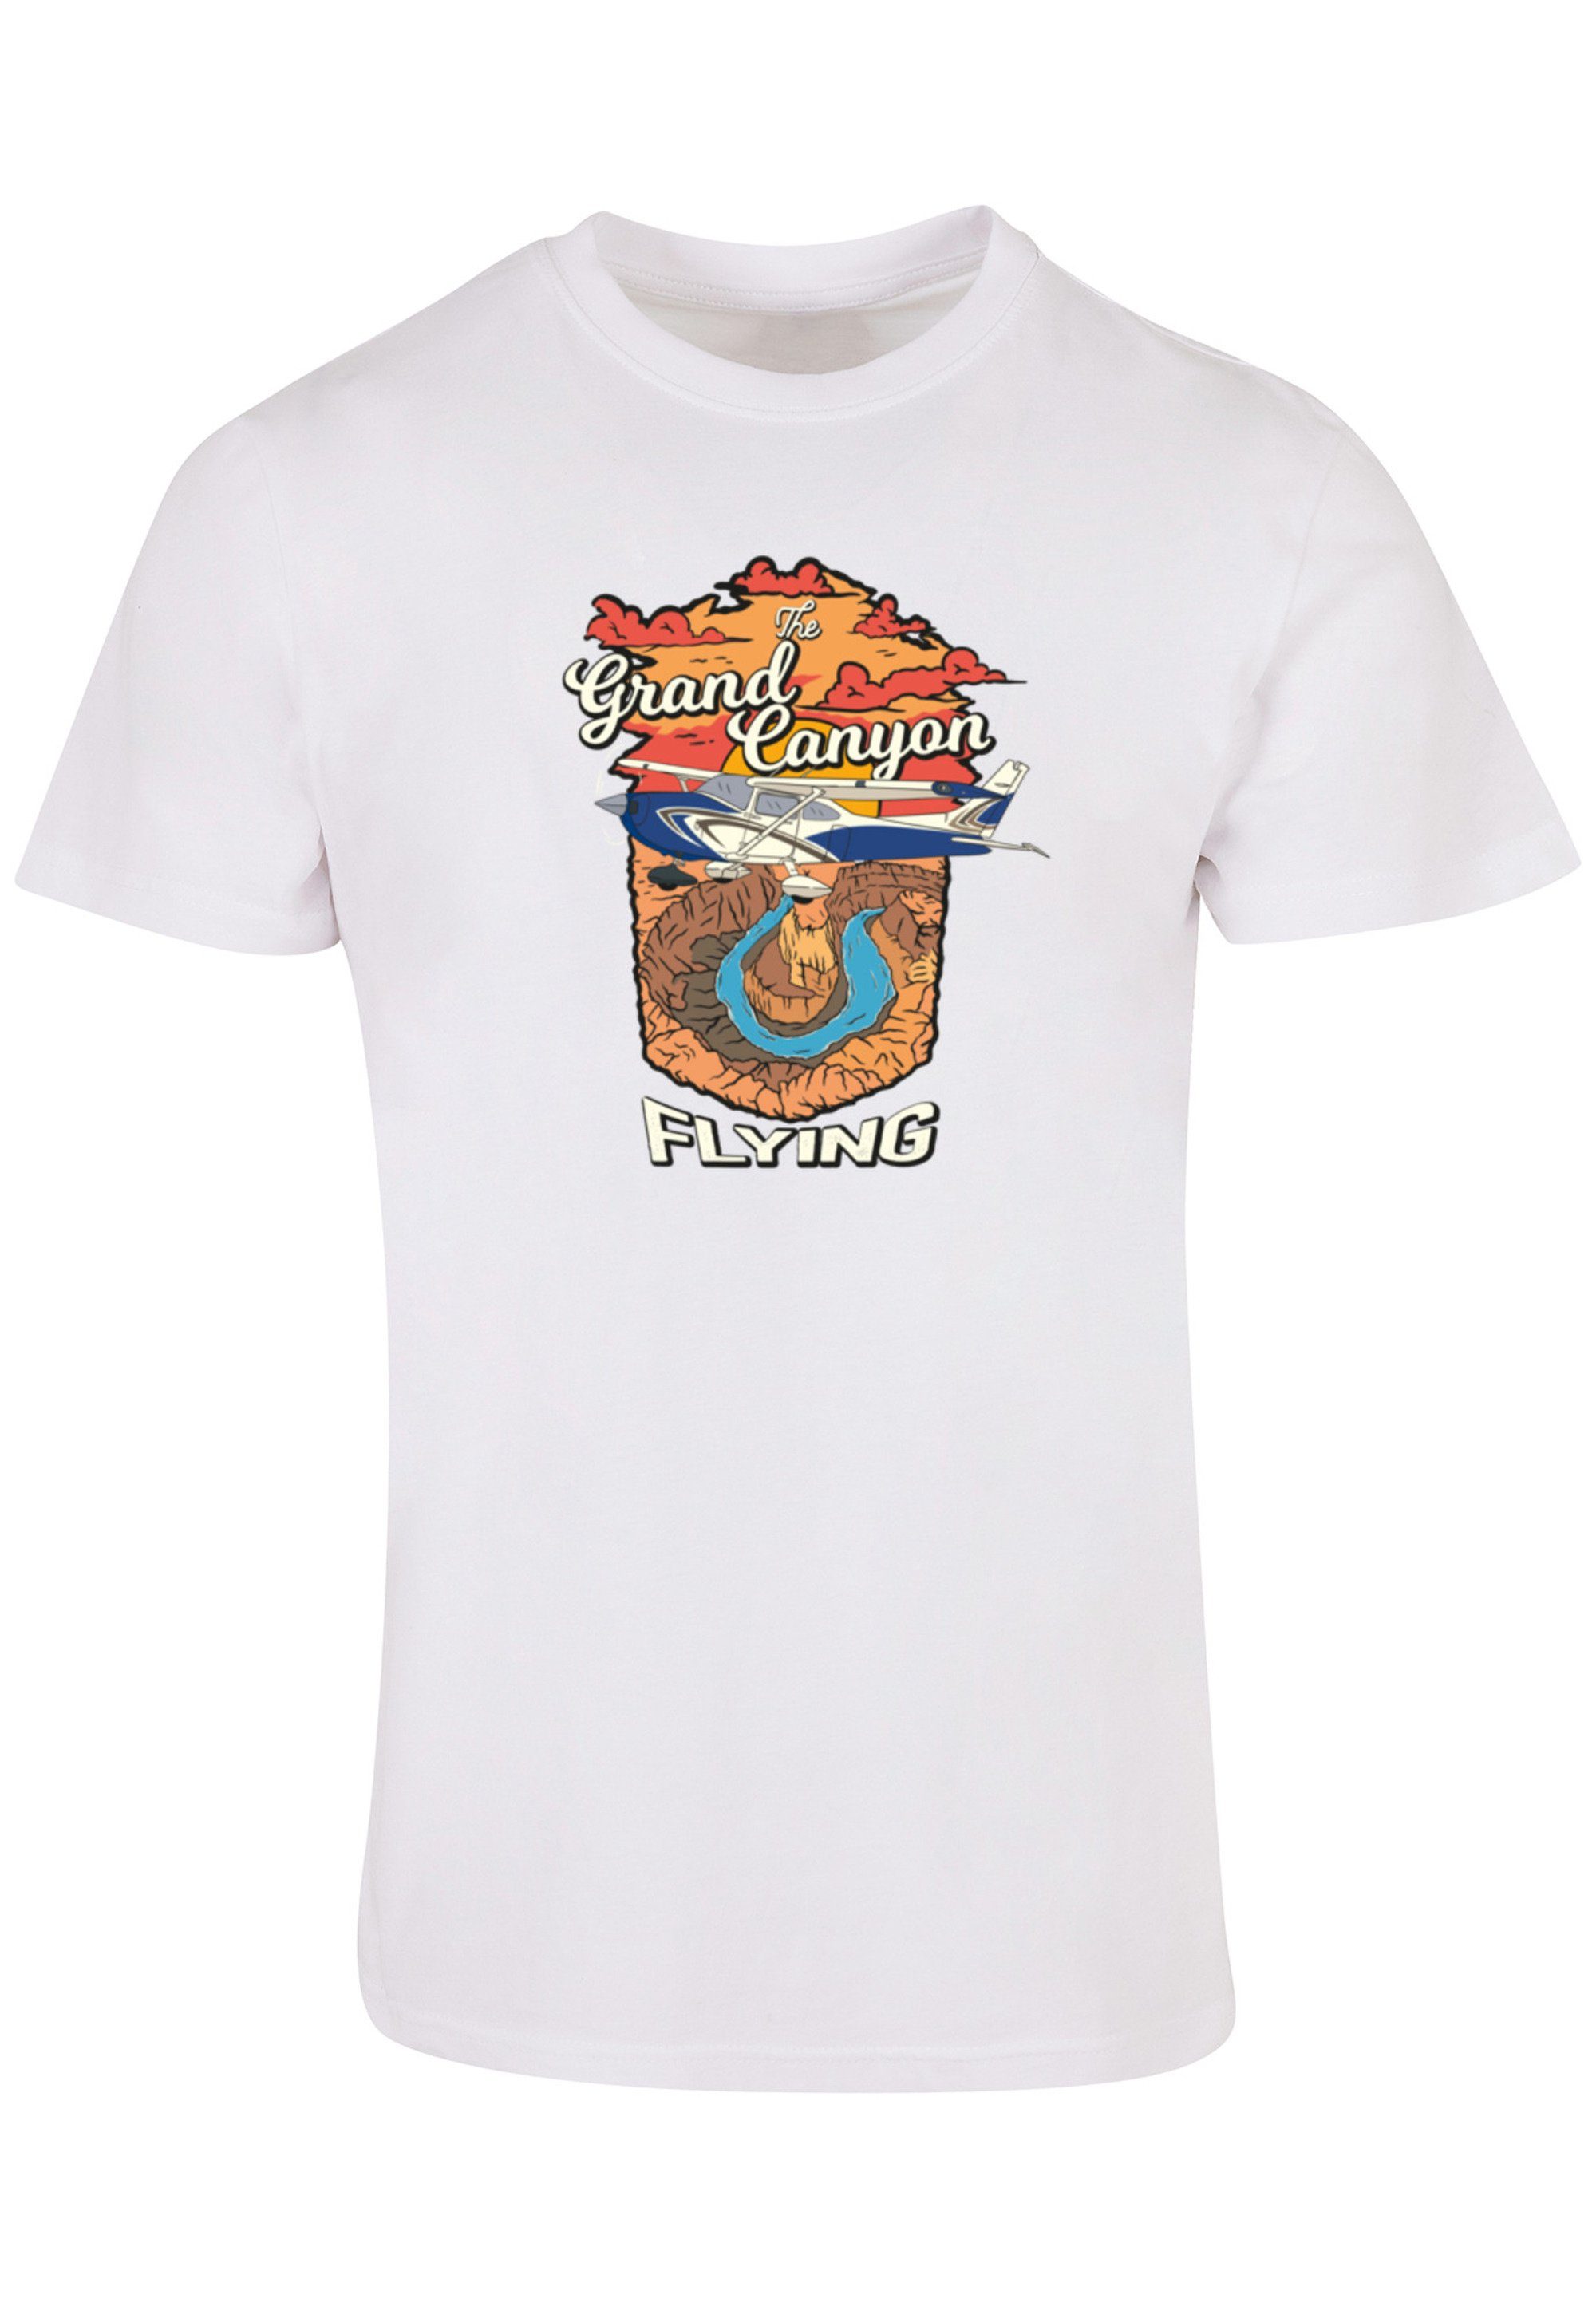 Print Grand weiß Canyon Flying T-Shirt F4NT4STIC